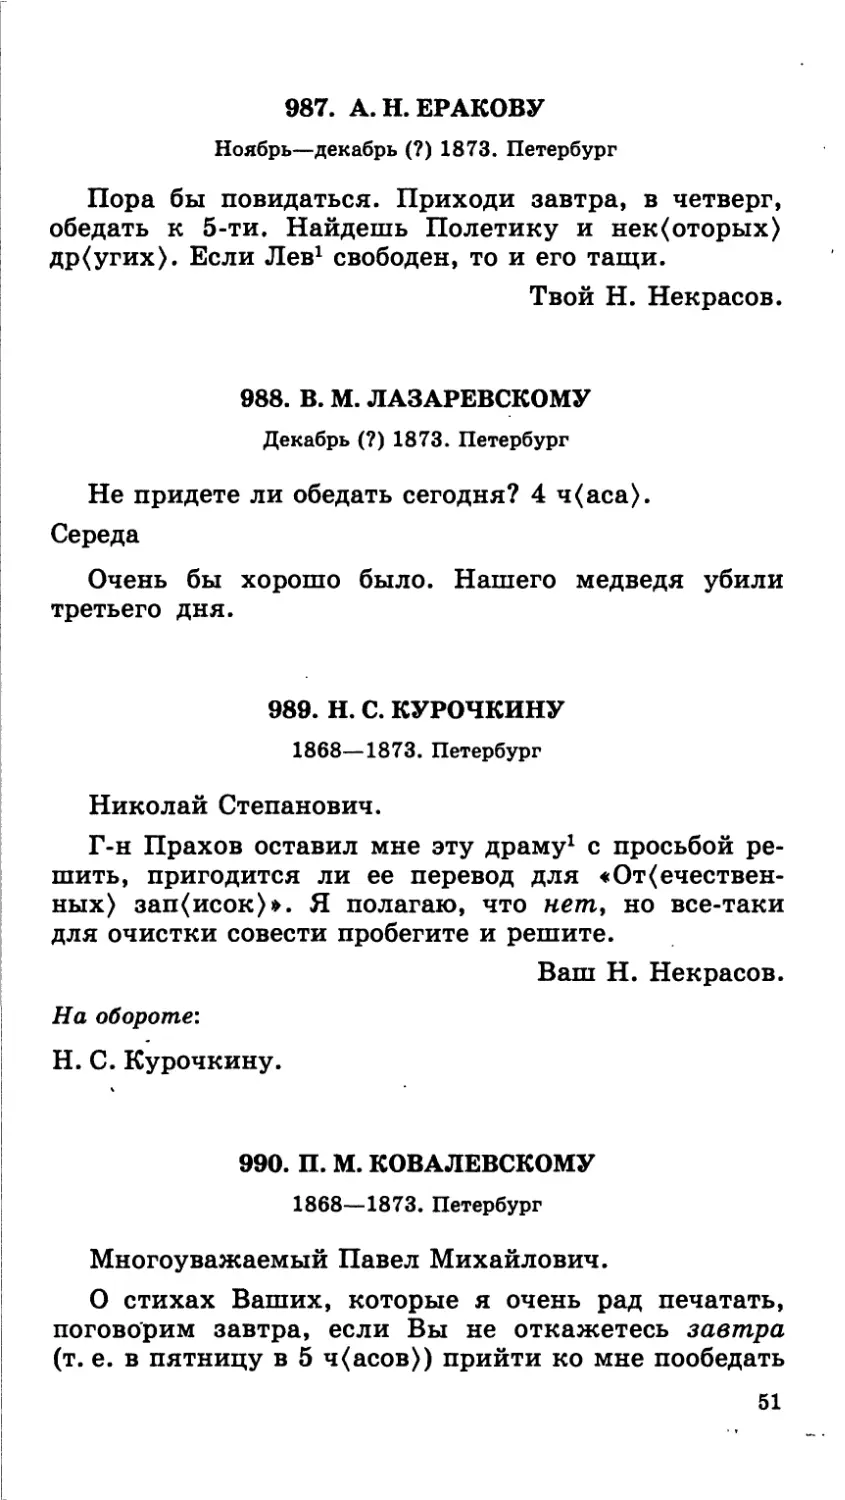 989.Н. С. Курочкину. 1868—1873
990.П. М. Ковалевскому. 1868—1873